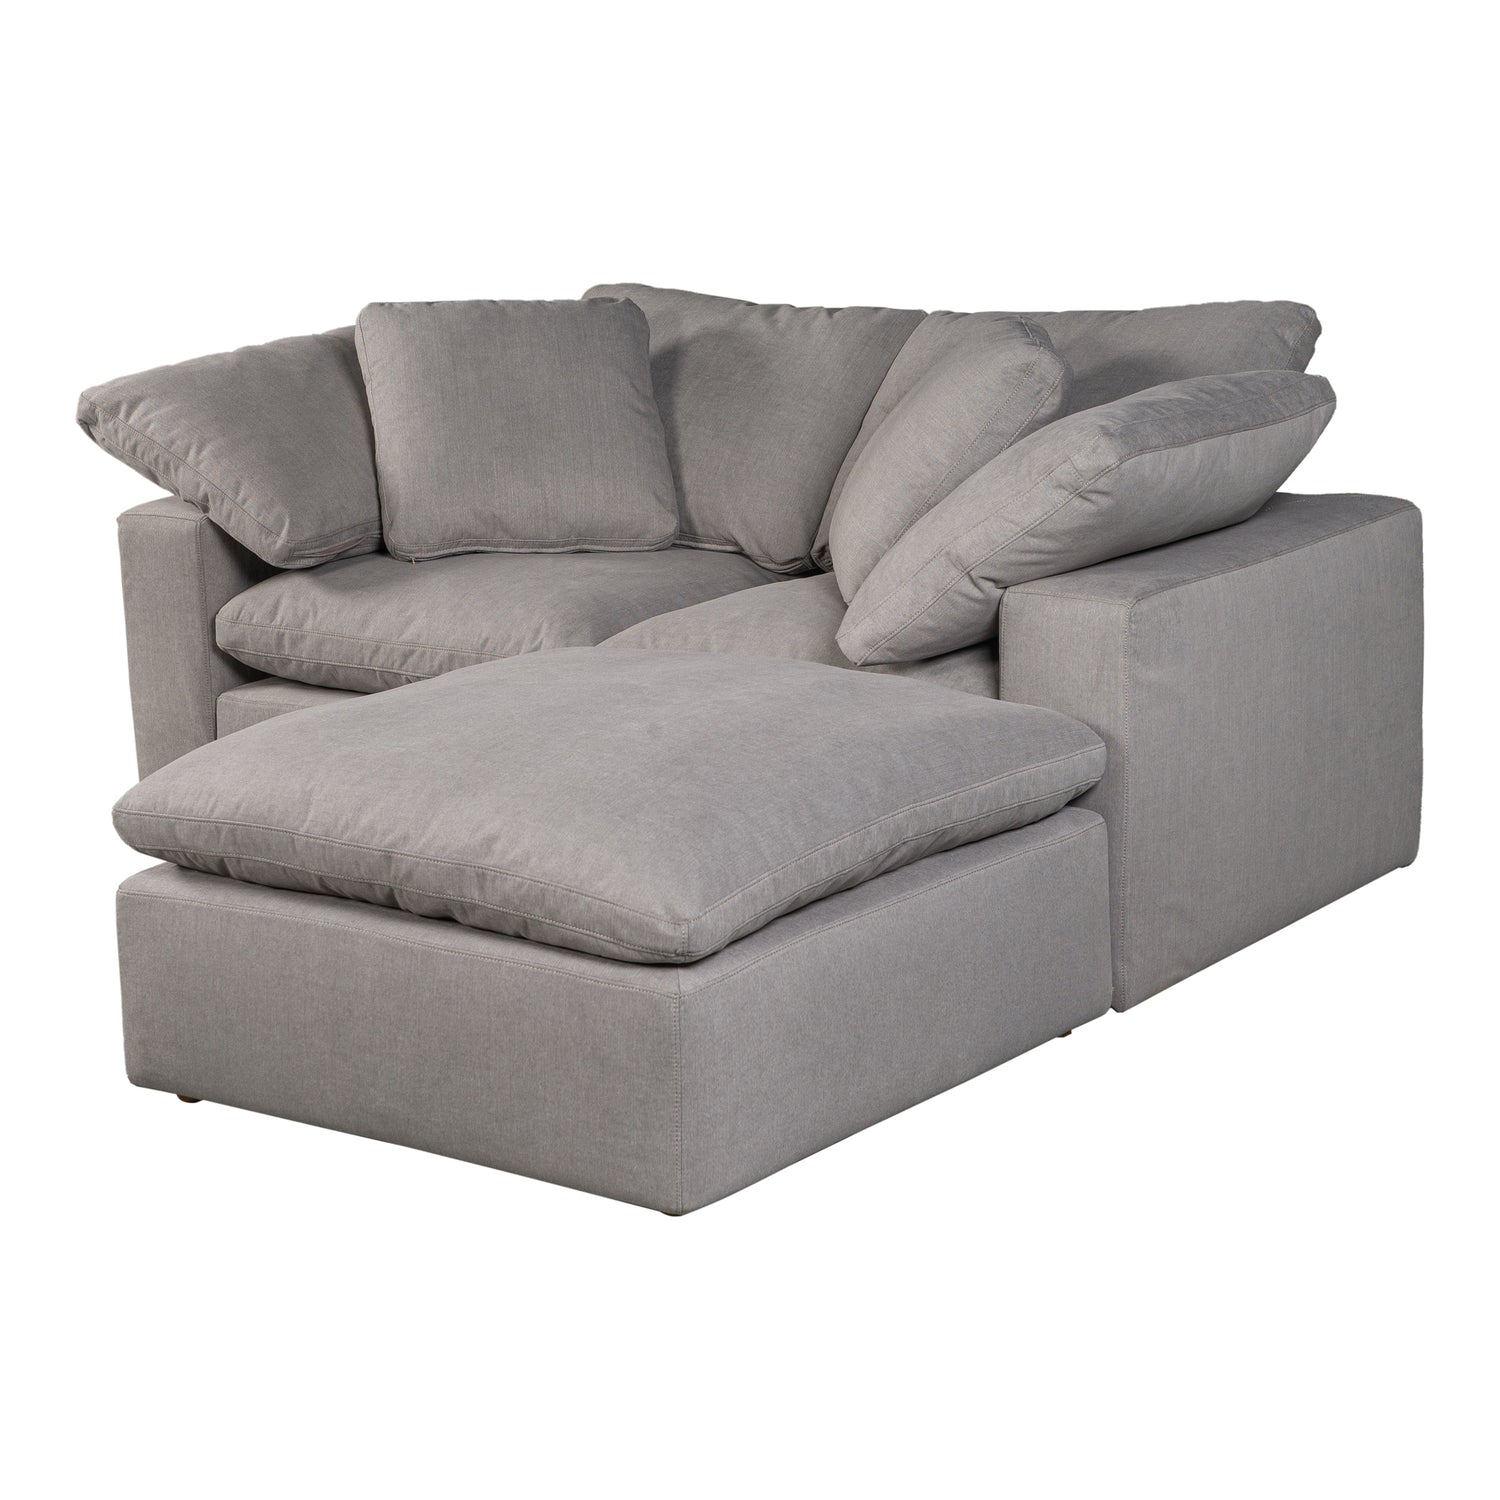 komfi-3-piece-modular-sectional-nook-grey-comfy 